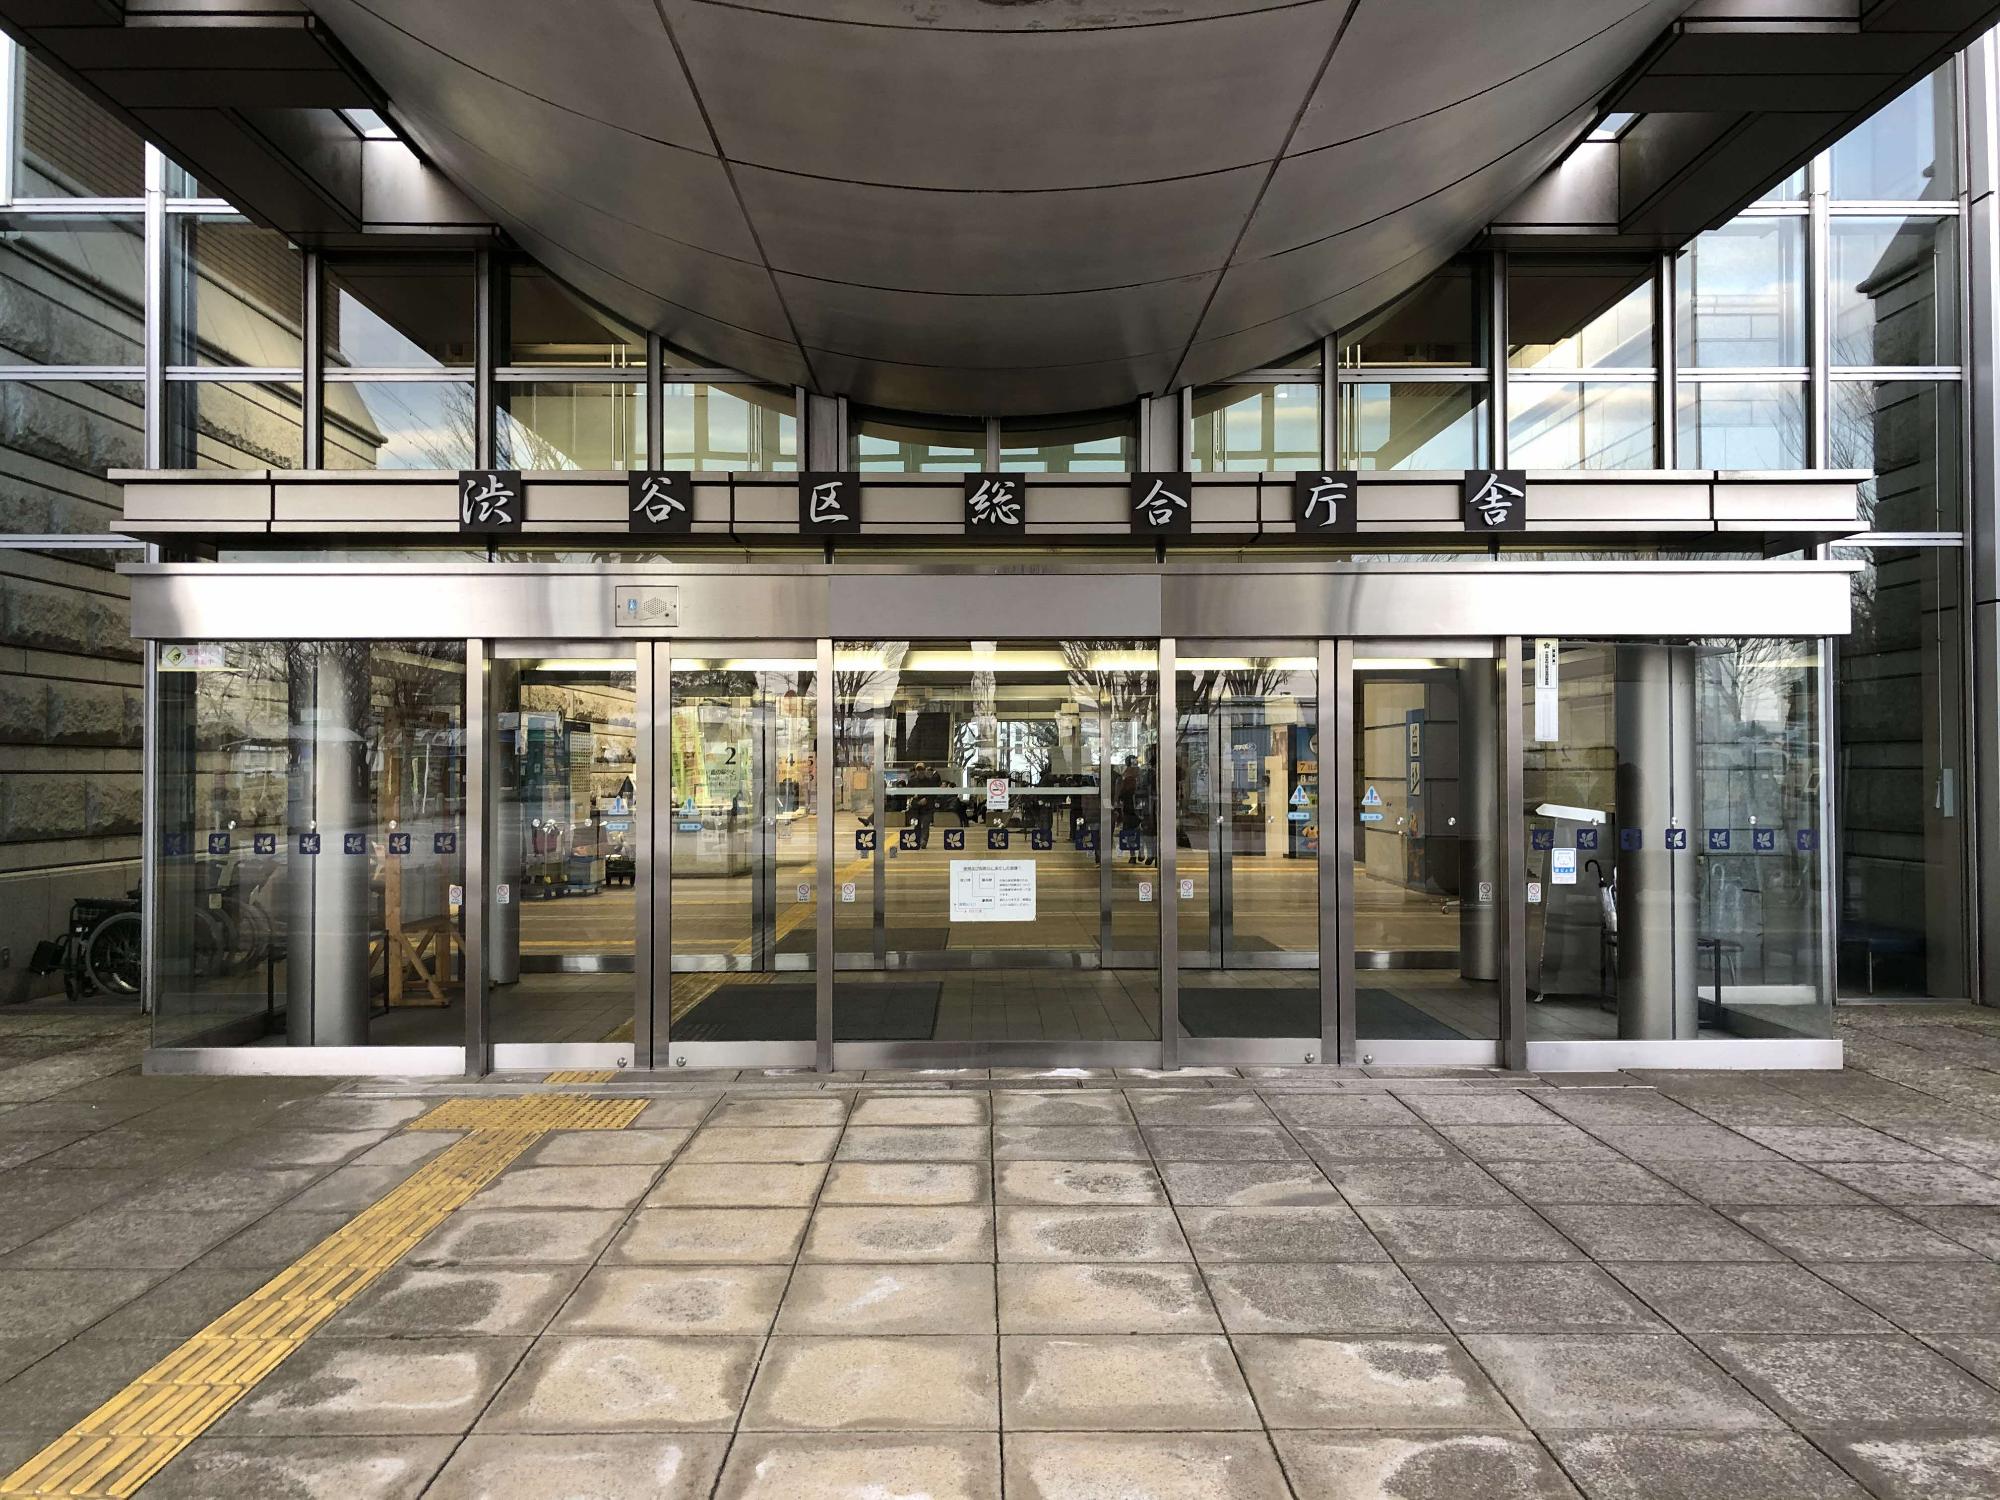 シルバーのフレームと全面ガラス張りで出来た入口上部に「渋谷区総合庁舎」と書かれた表示がある建物正面入口の写真